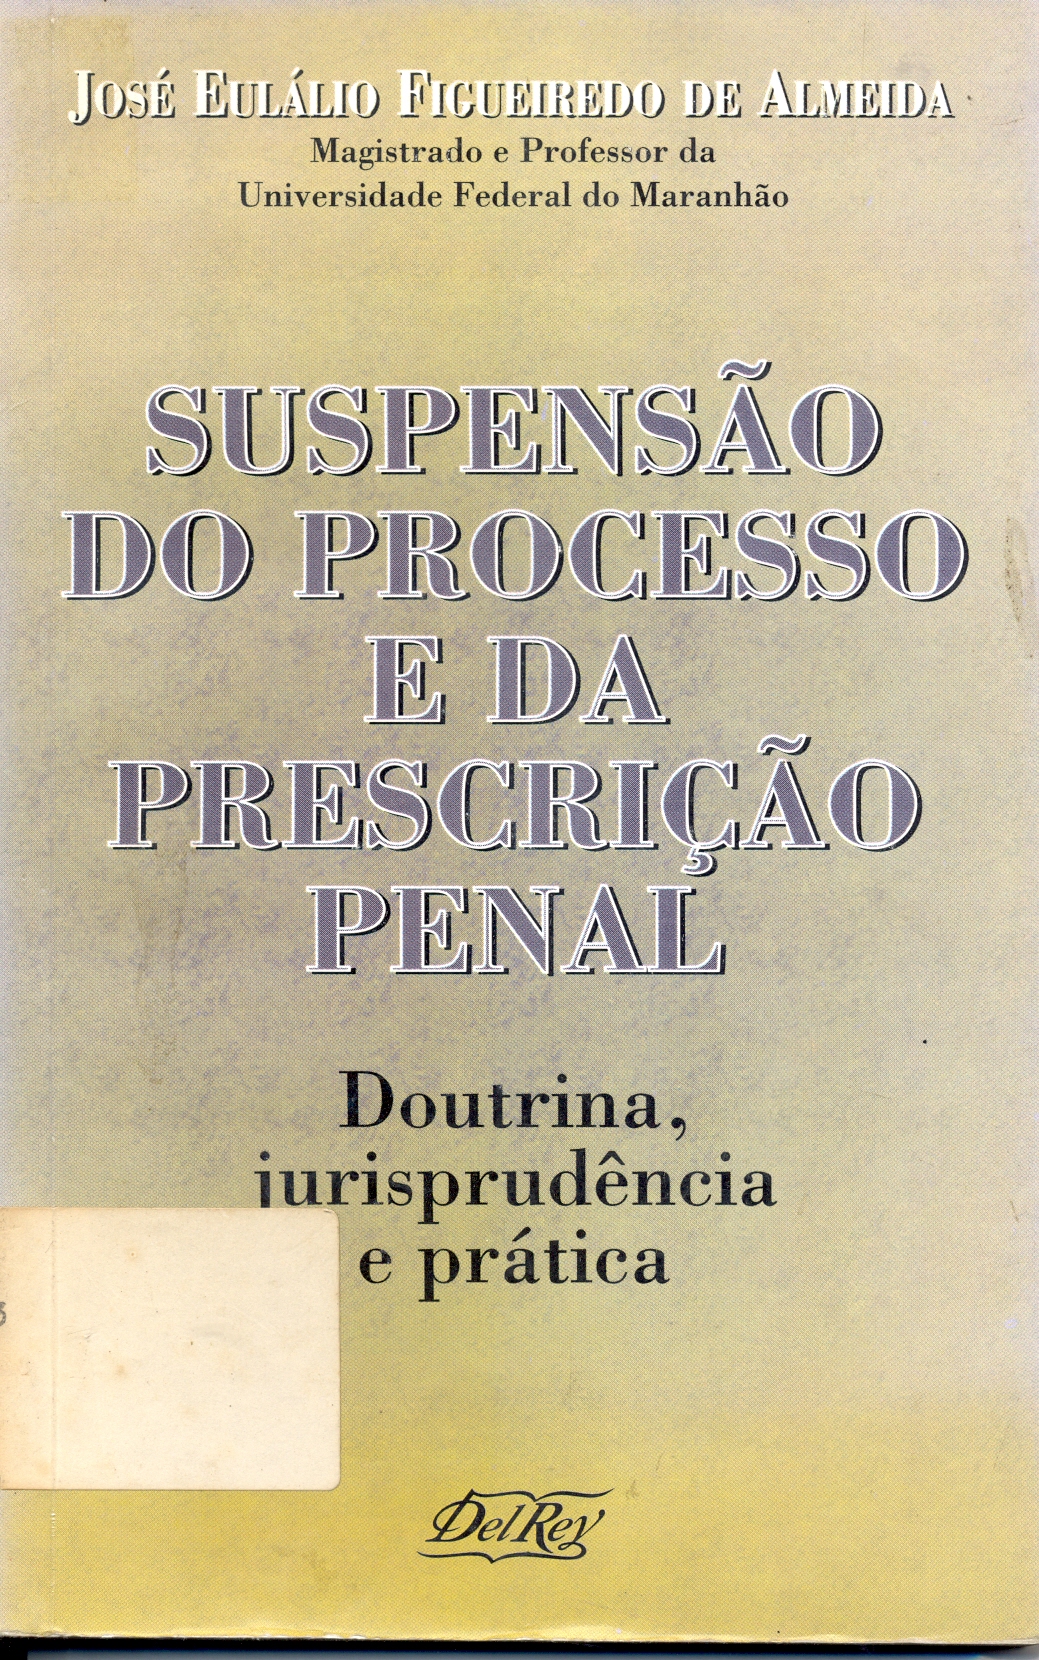 Suspensão do Processo e da Prescrição Penal - Doutrina, jurisprudência e prática